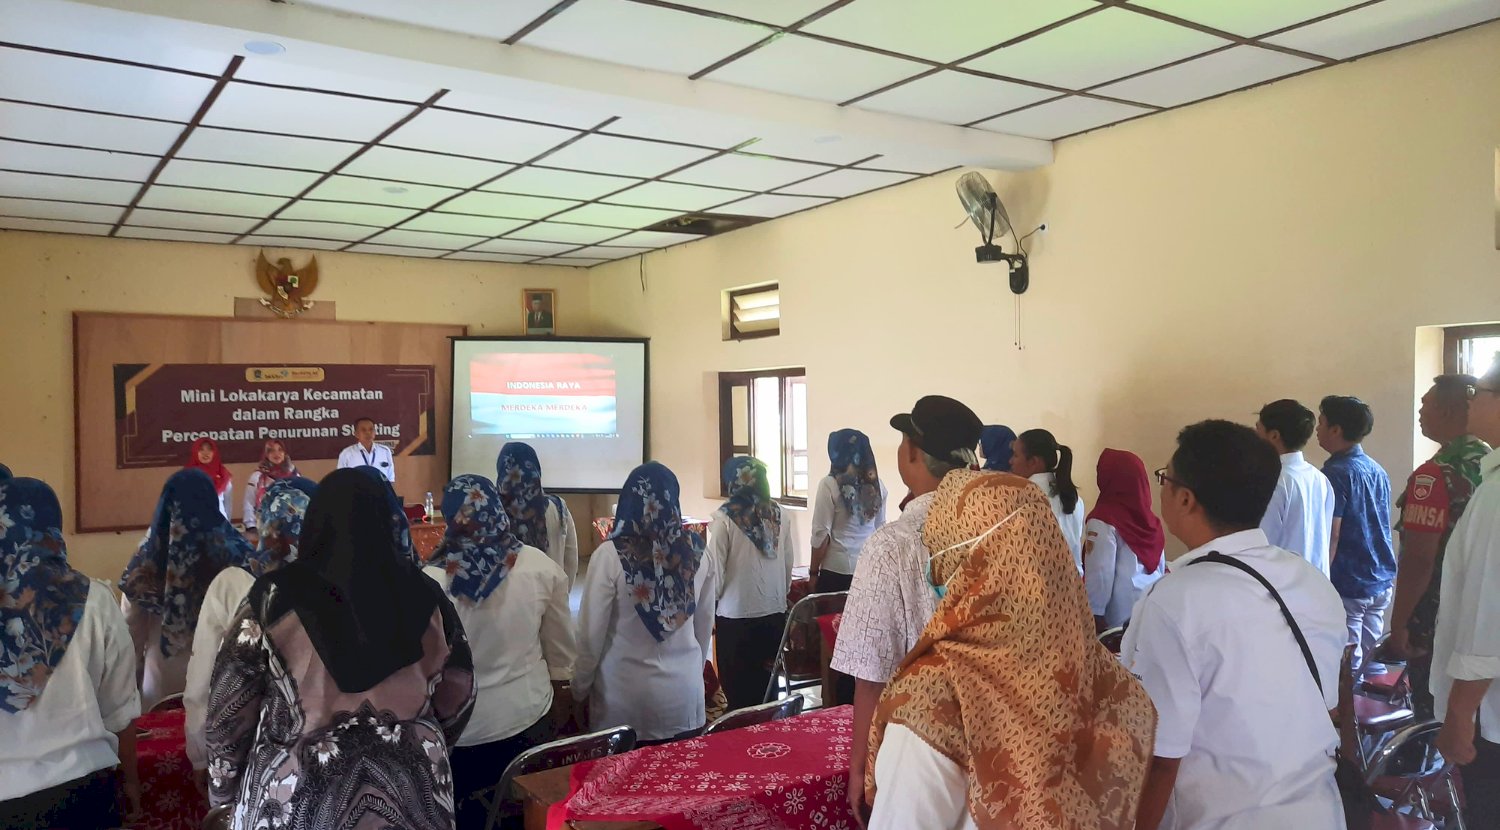 Mini Lokakrya Kecamatan dalam Rangka Percepatan Penurunan Stunting